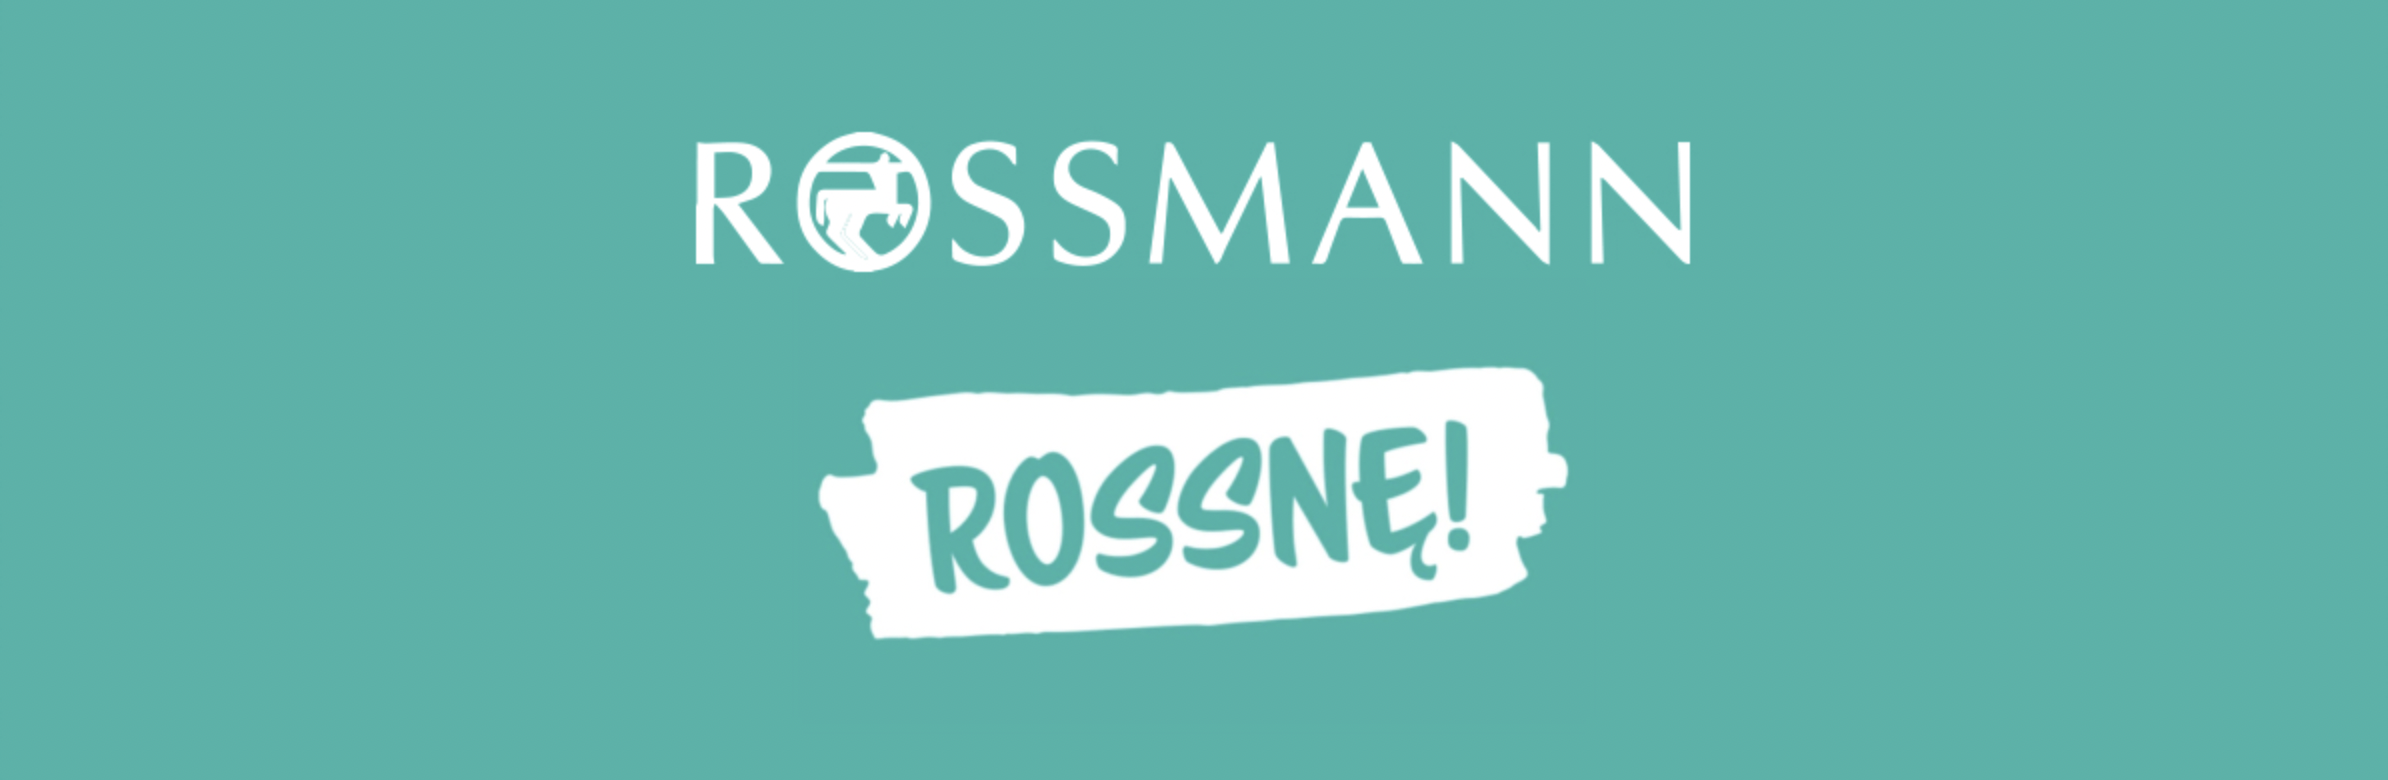 Rossmann - Darmowe produkty w programie Rossnę!